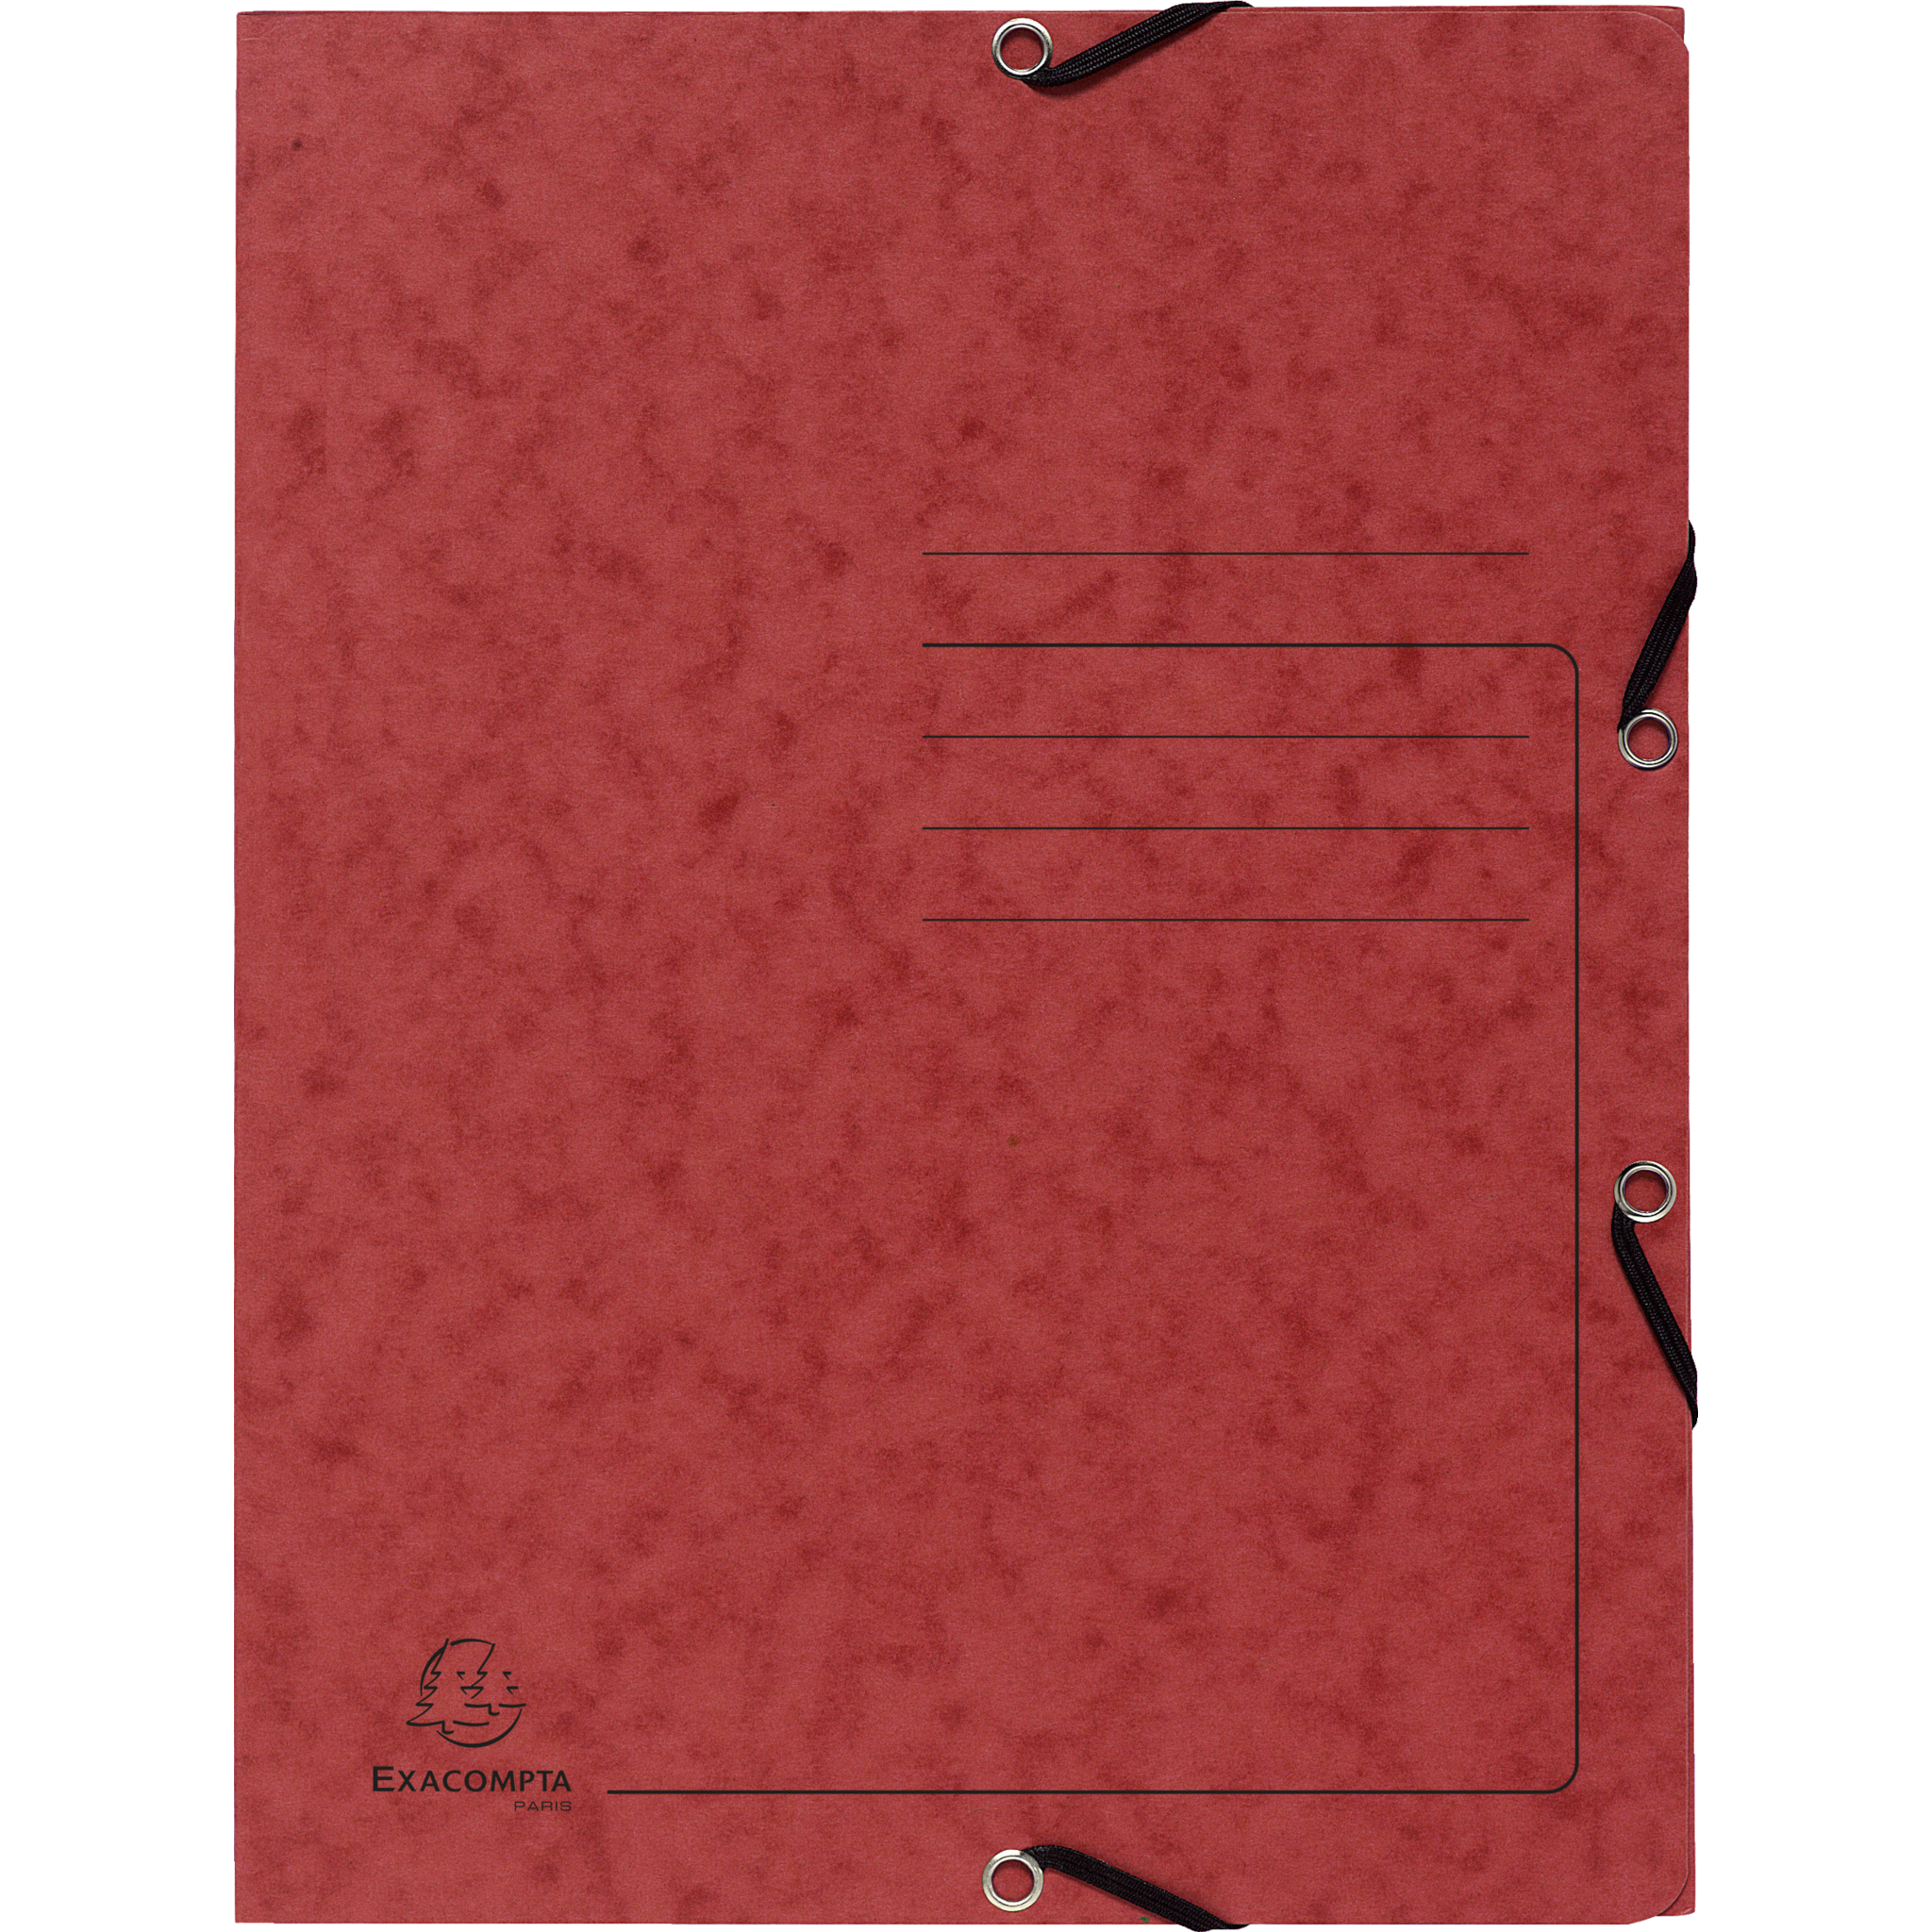 EXACOMPTA Sammelmappe mit Gummizug und 3 Klappen aus Colorspan-Karton 355g/m2 - A4 - Rot